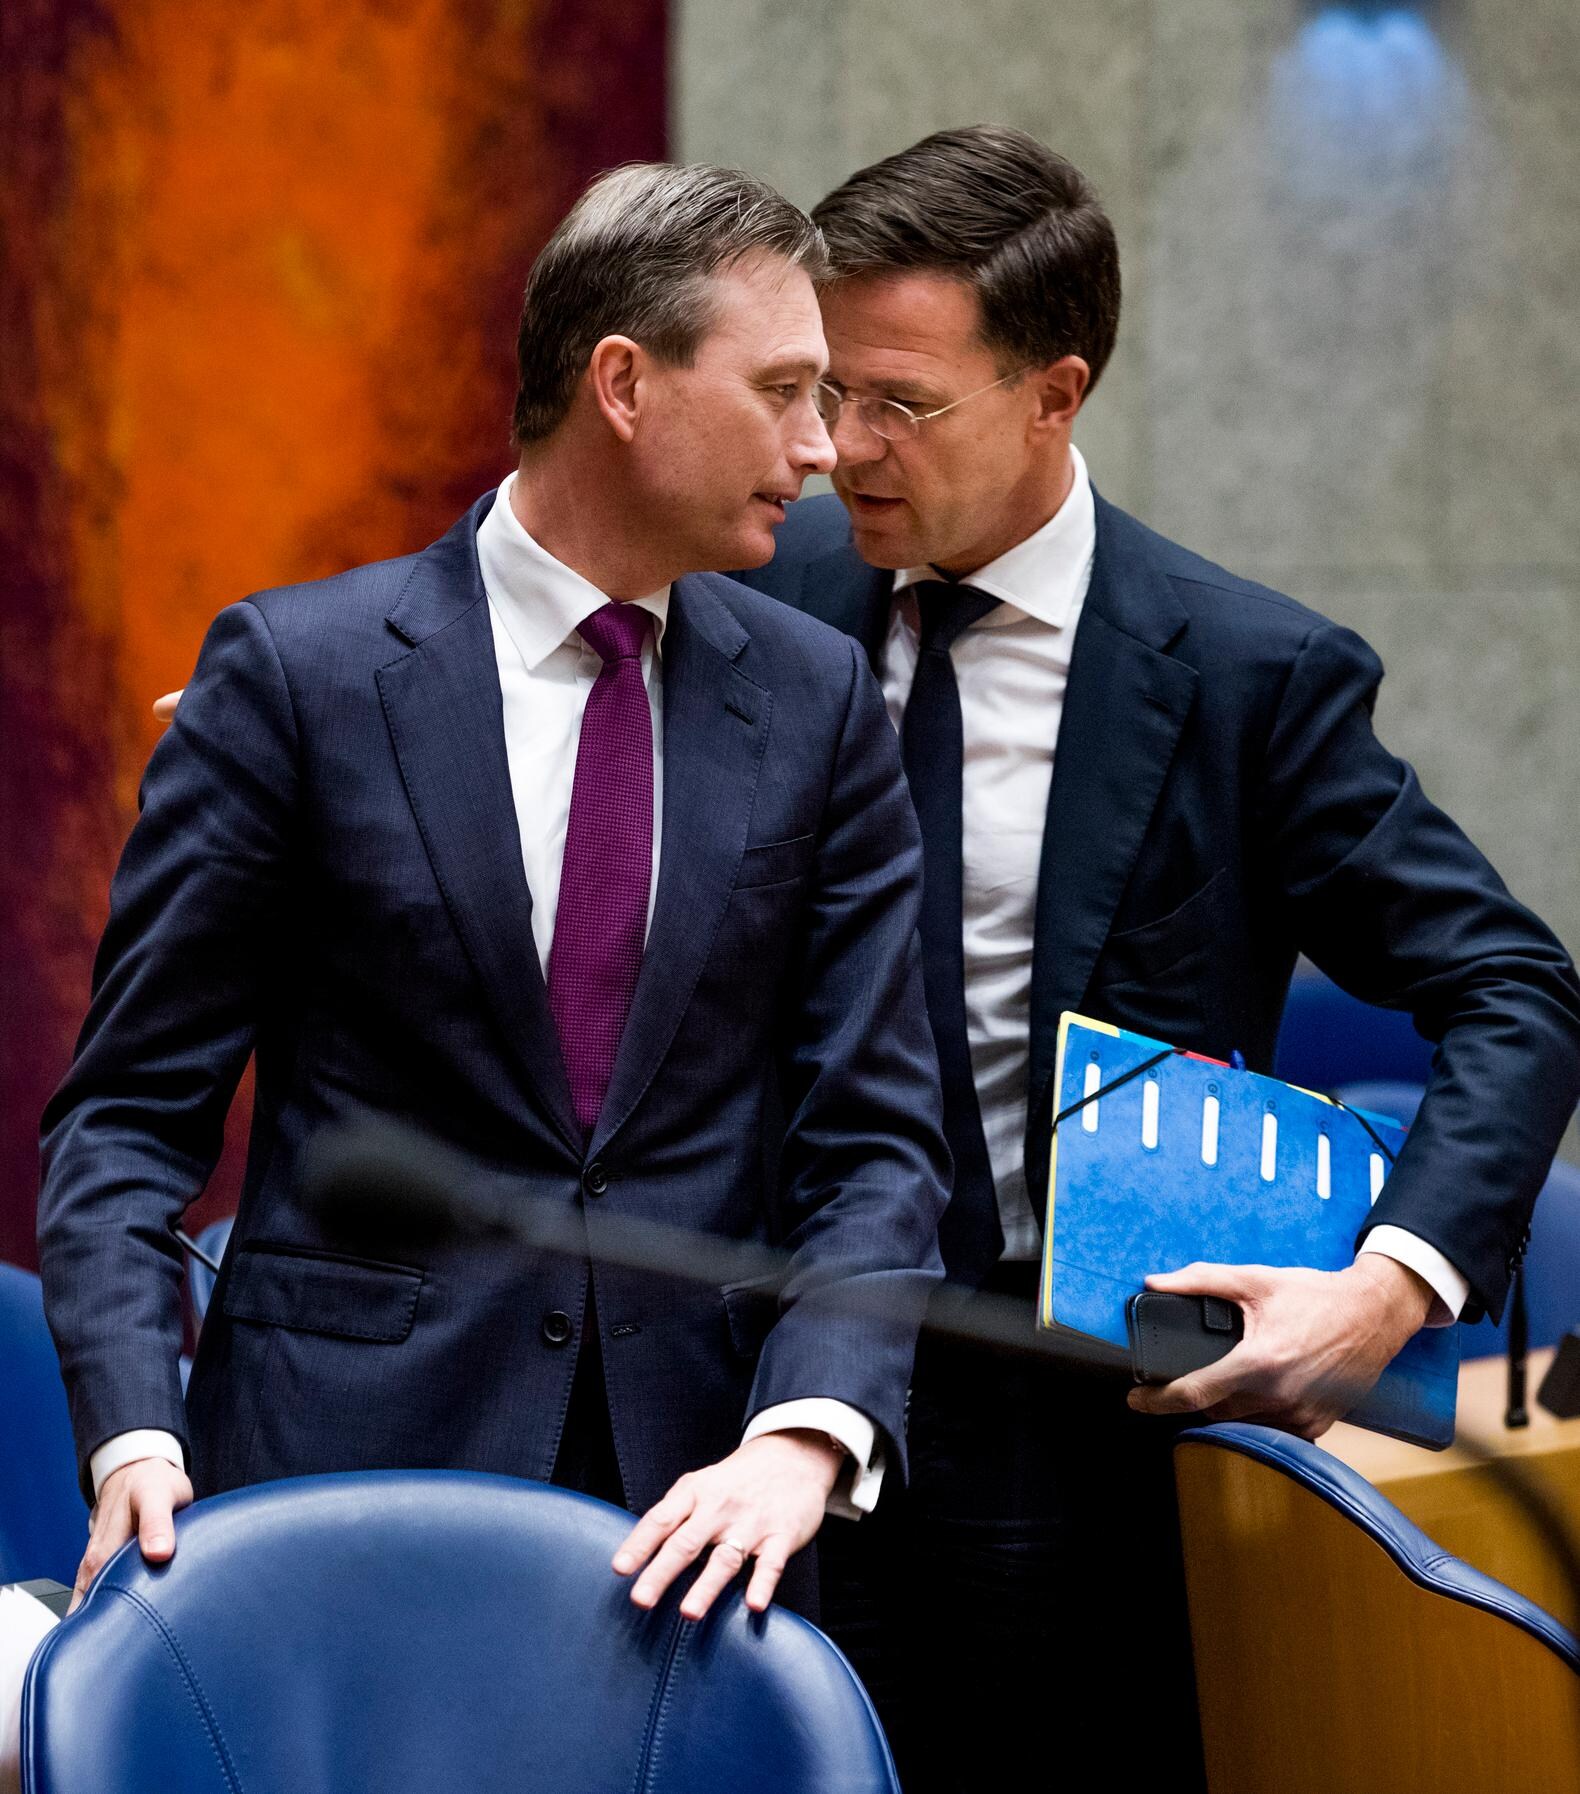 De rol van premier Rutte (13 februari 2018 - heden)